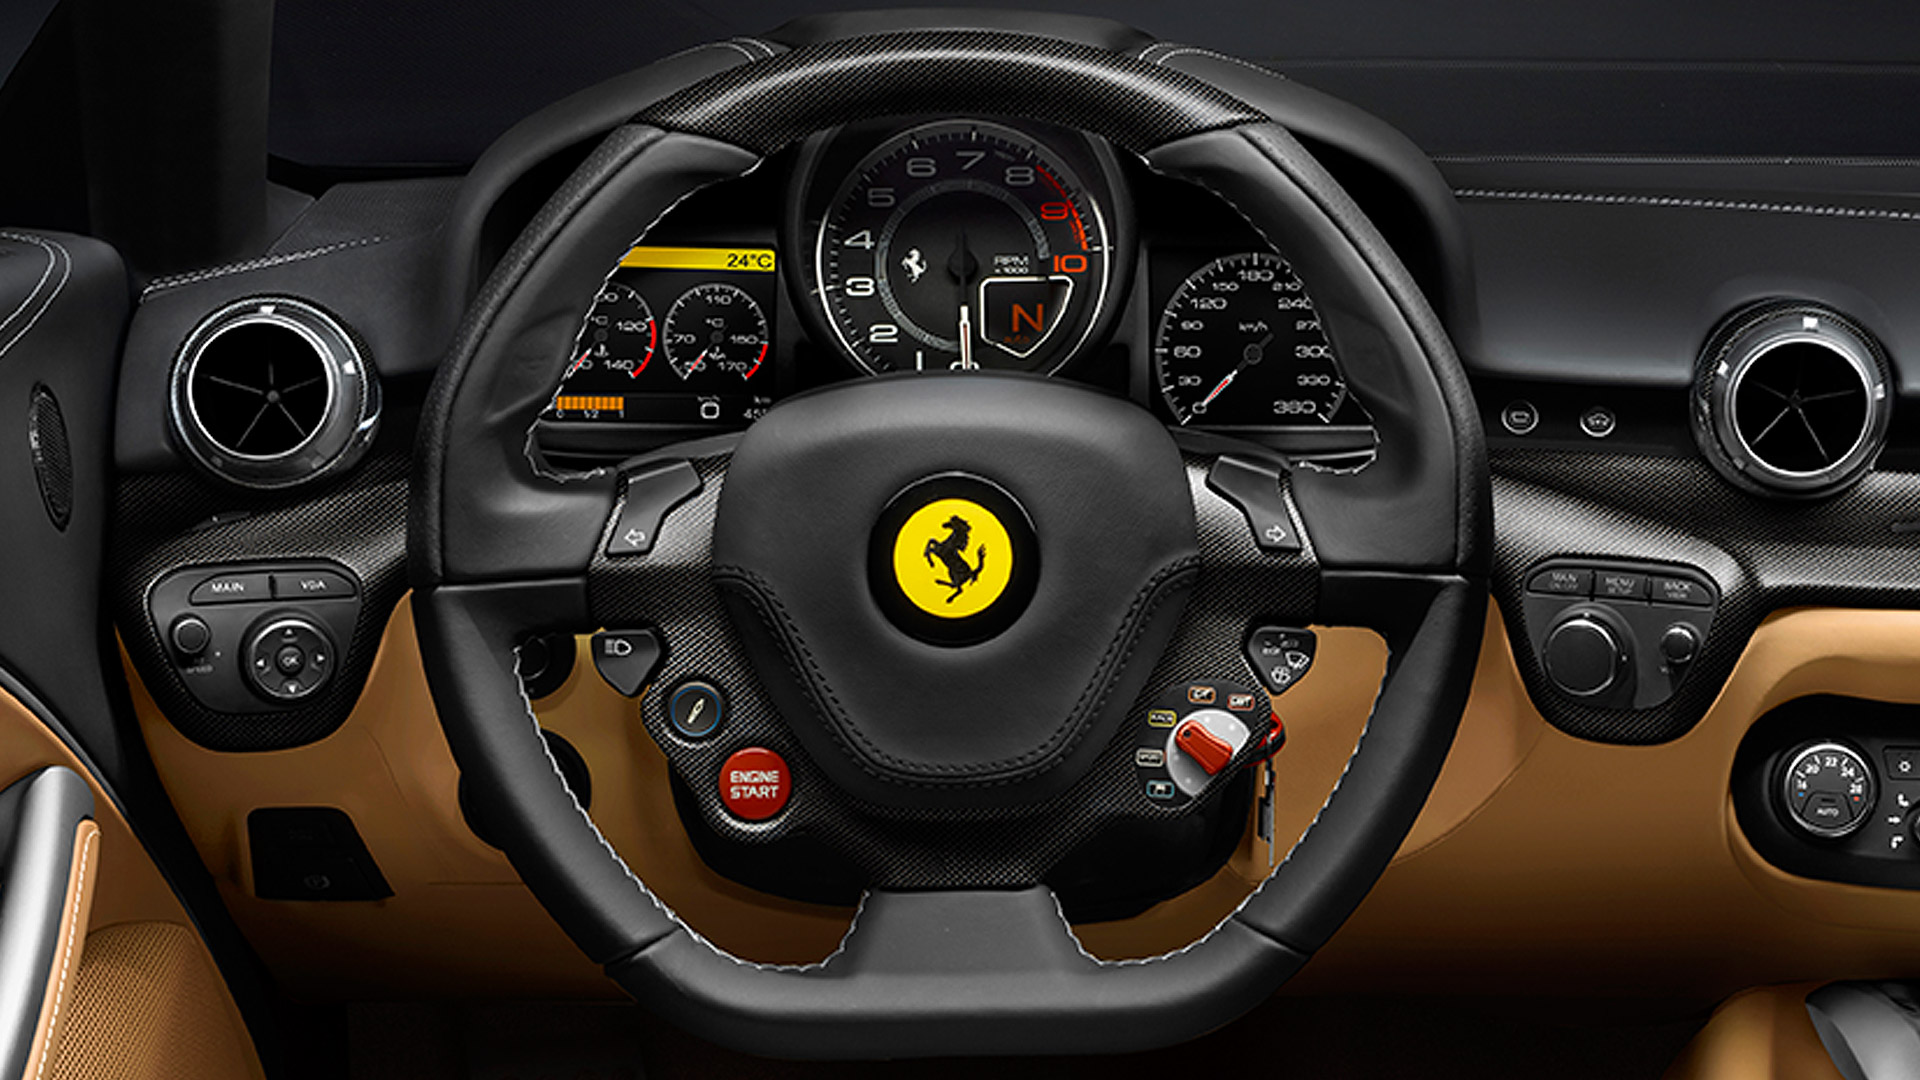 Ferrari F12 Berlinetta 2015 STD Interior